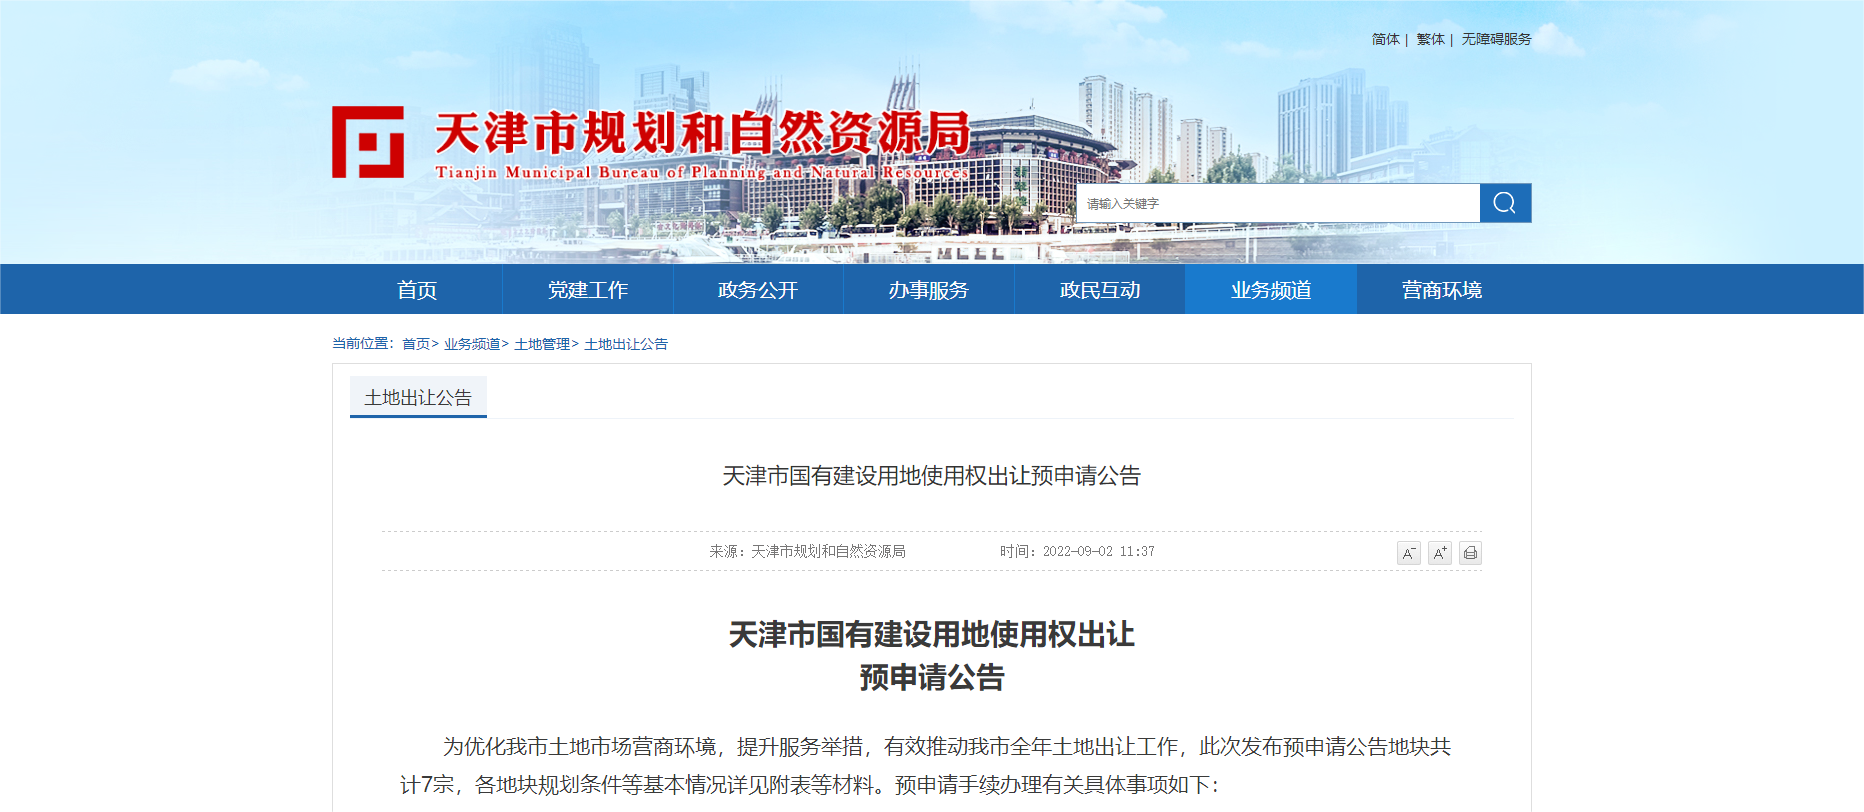 天津再发布7宗地出让预申请公告 土地面积约29.2万方_中国网地产